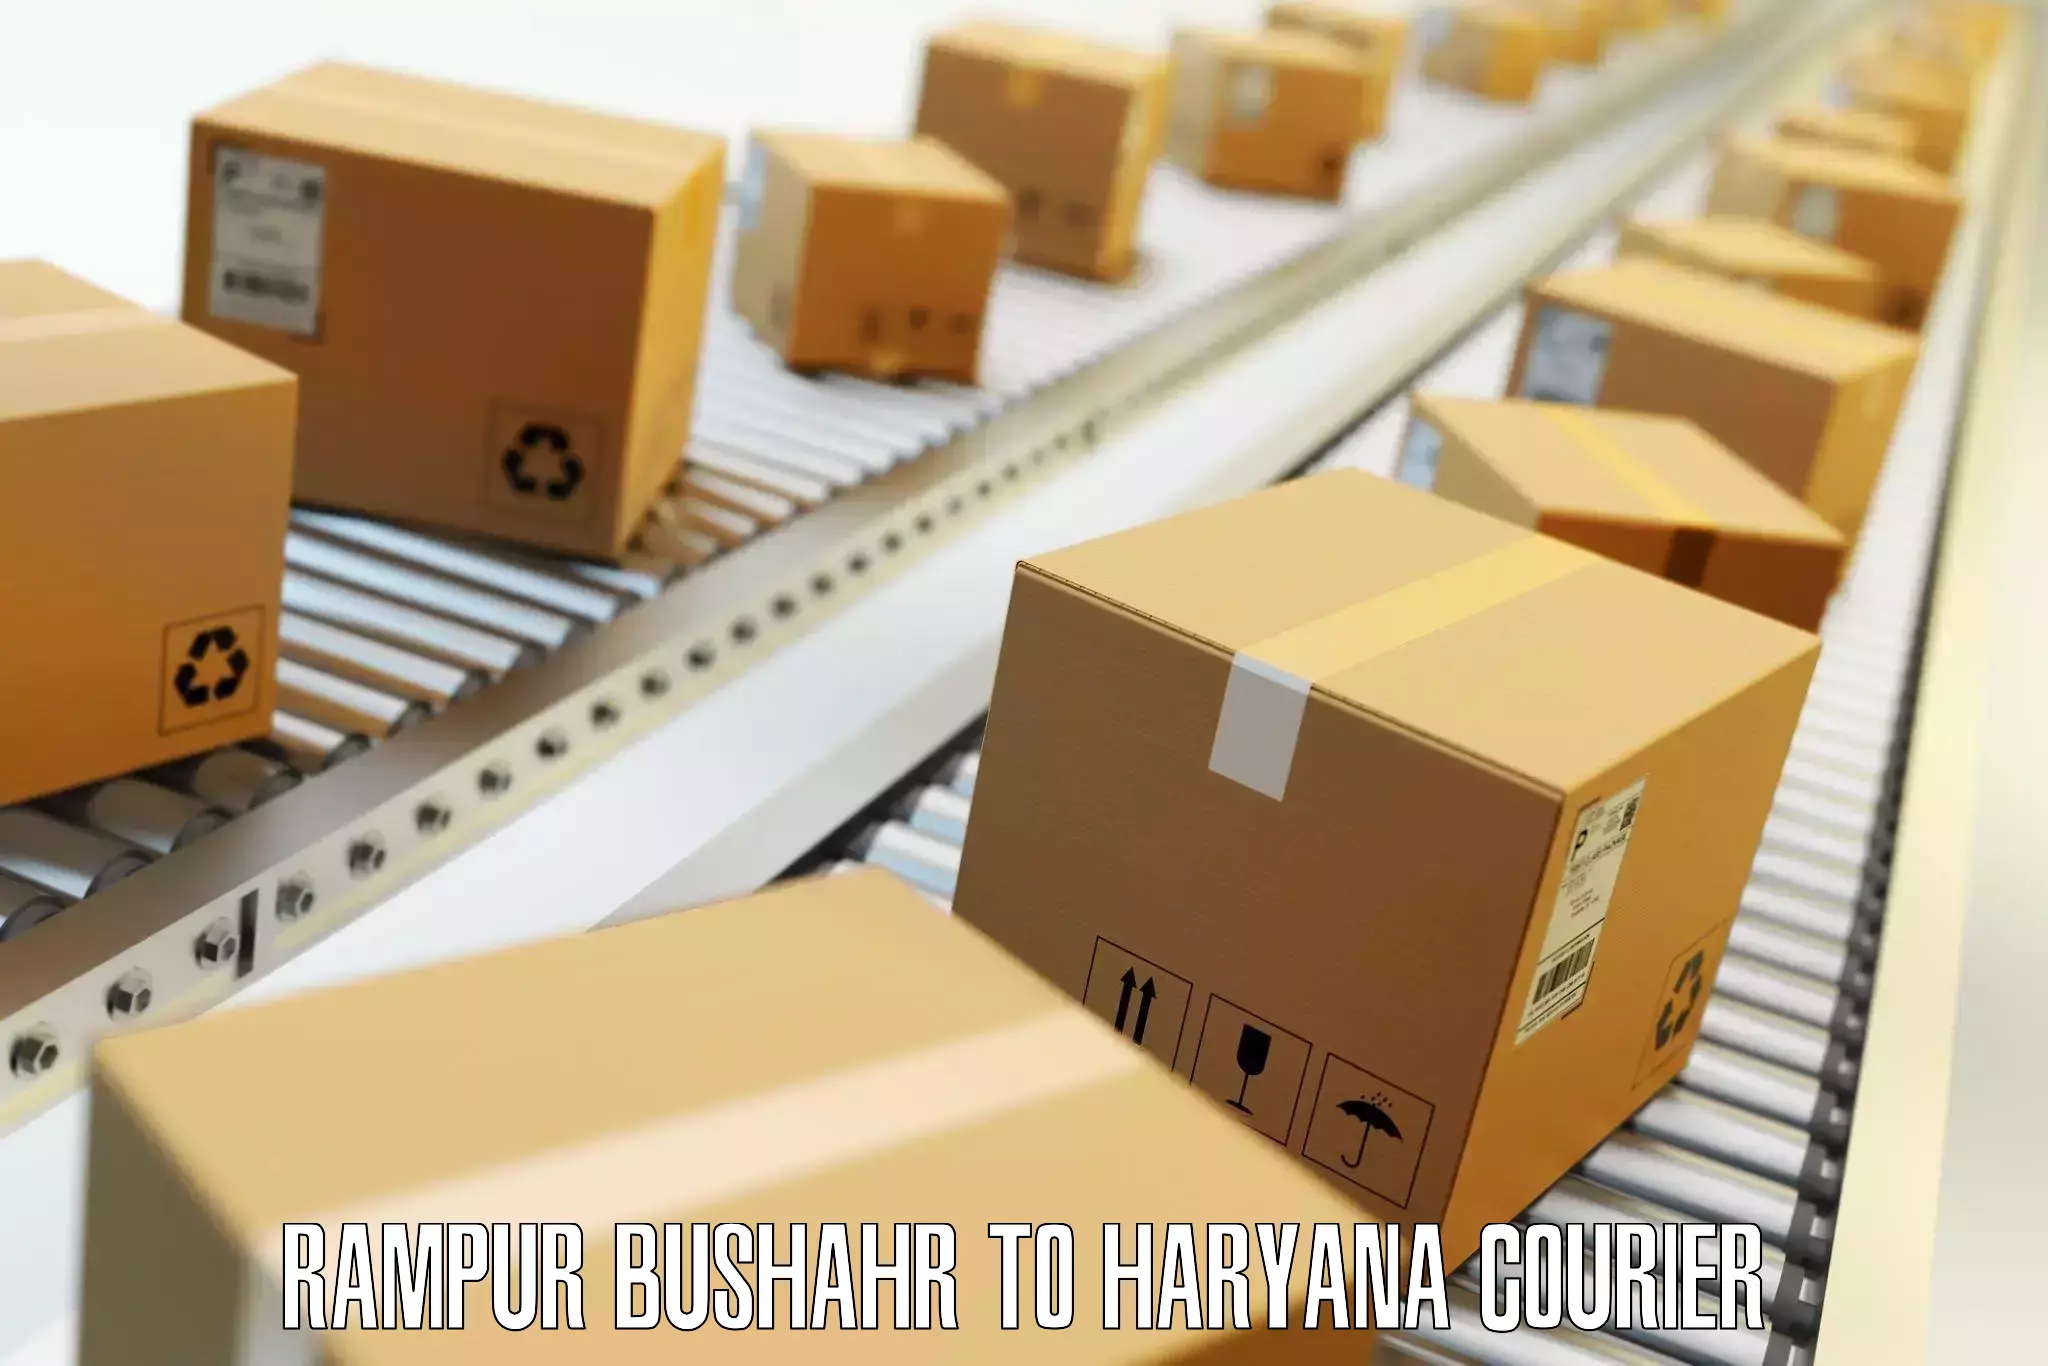 Baggage delivery estimate Rampur Bushahr to Haryana